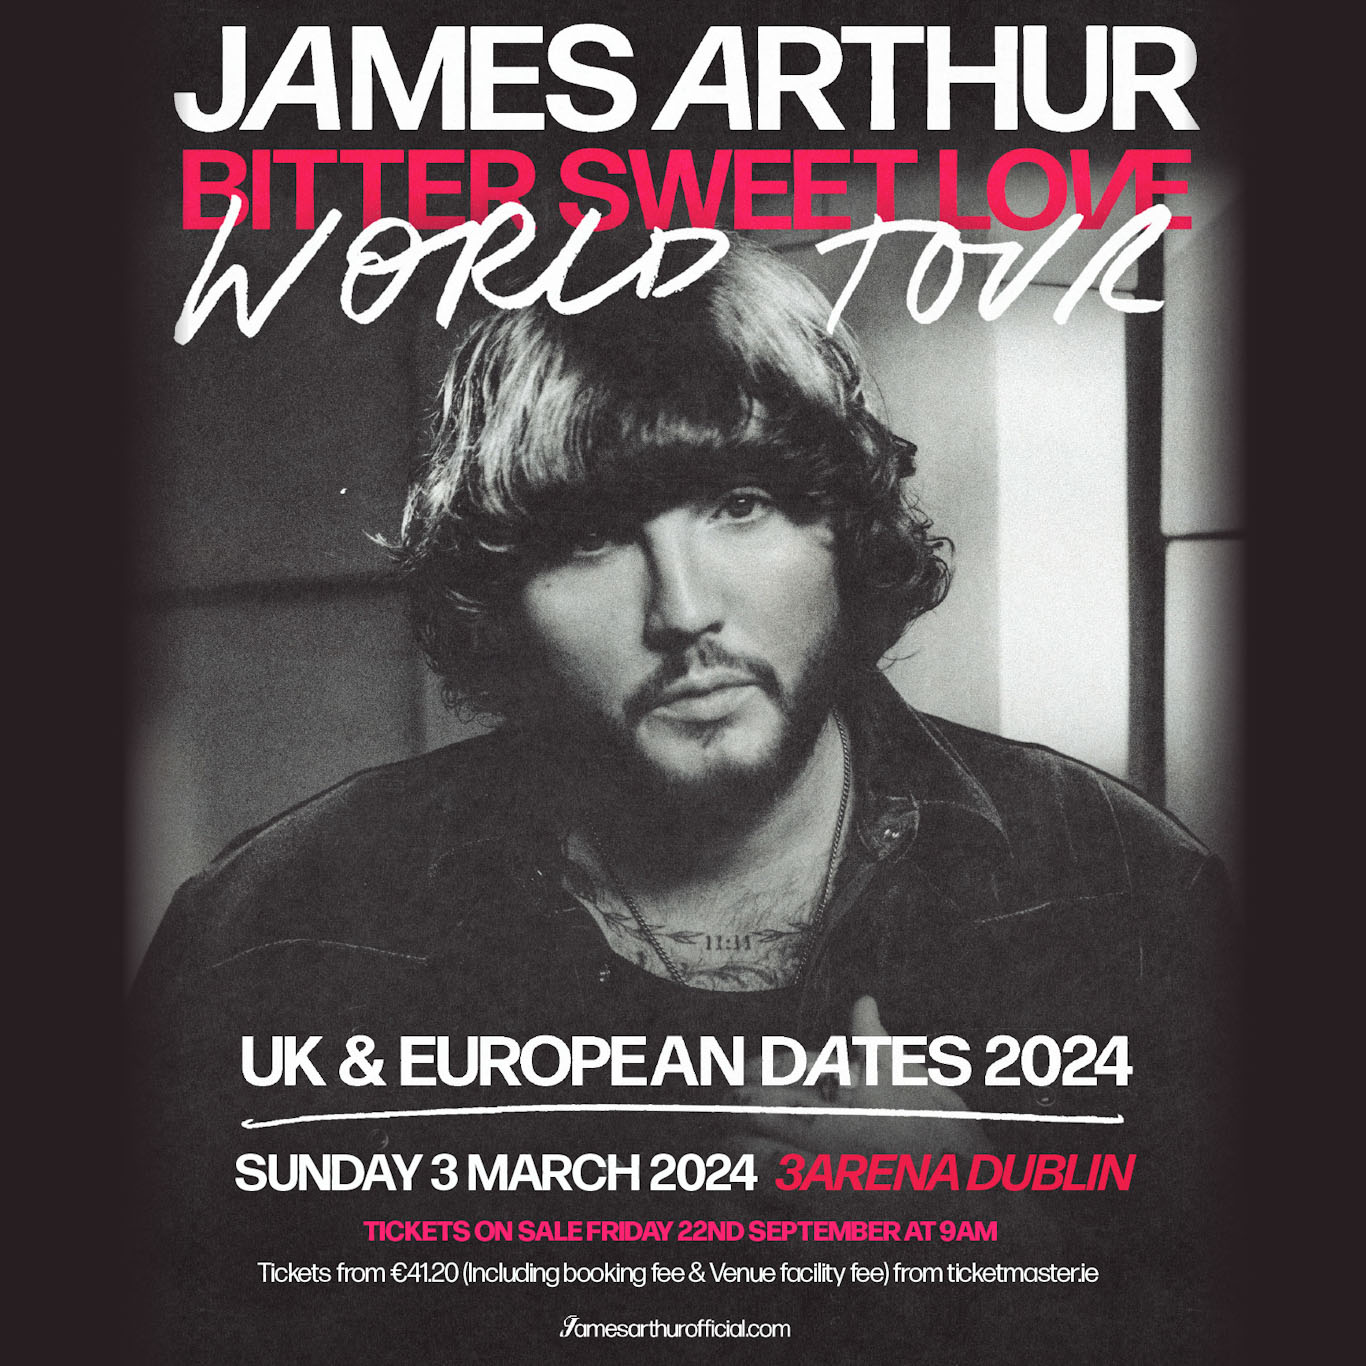 JAMES ARTHUR Bitter Sweet Love World Tour